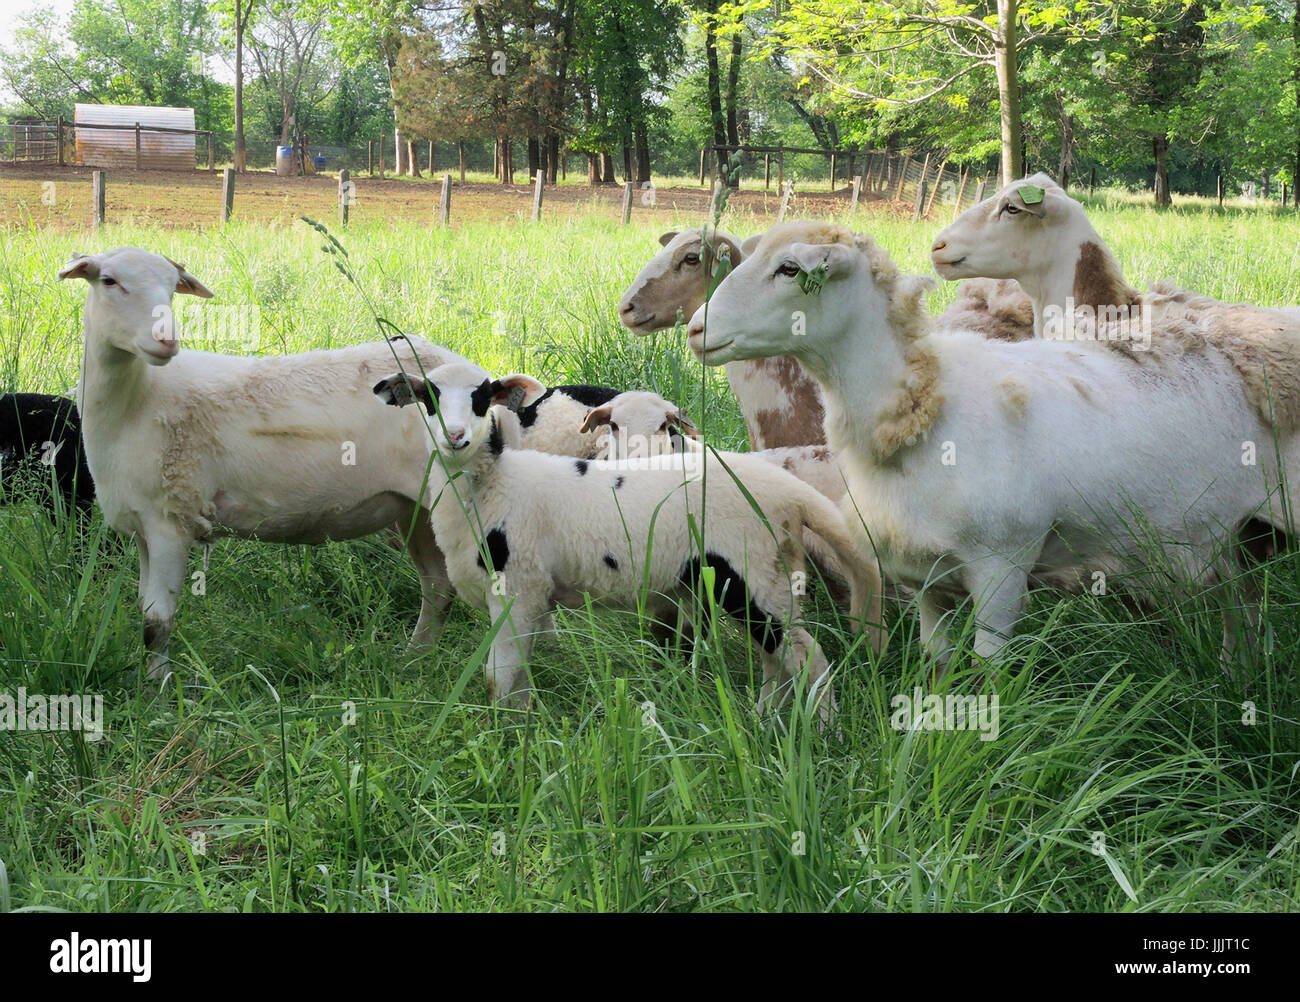 Sheep and Spring lambs on small farm, grassy field, family farm Stock Photo